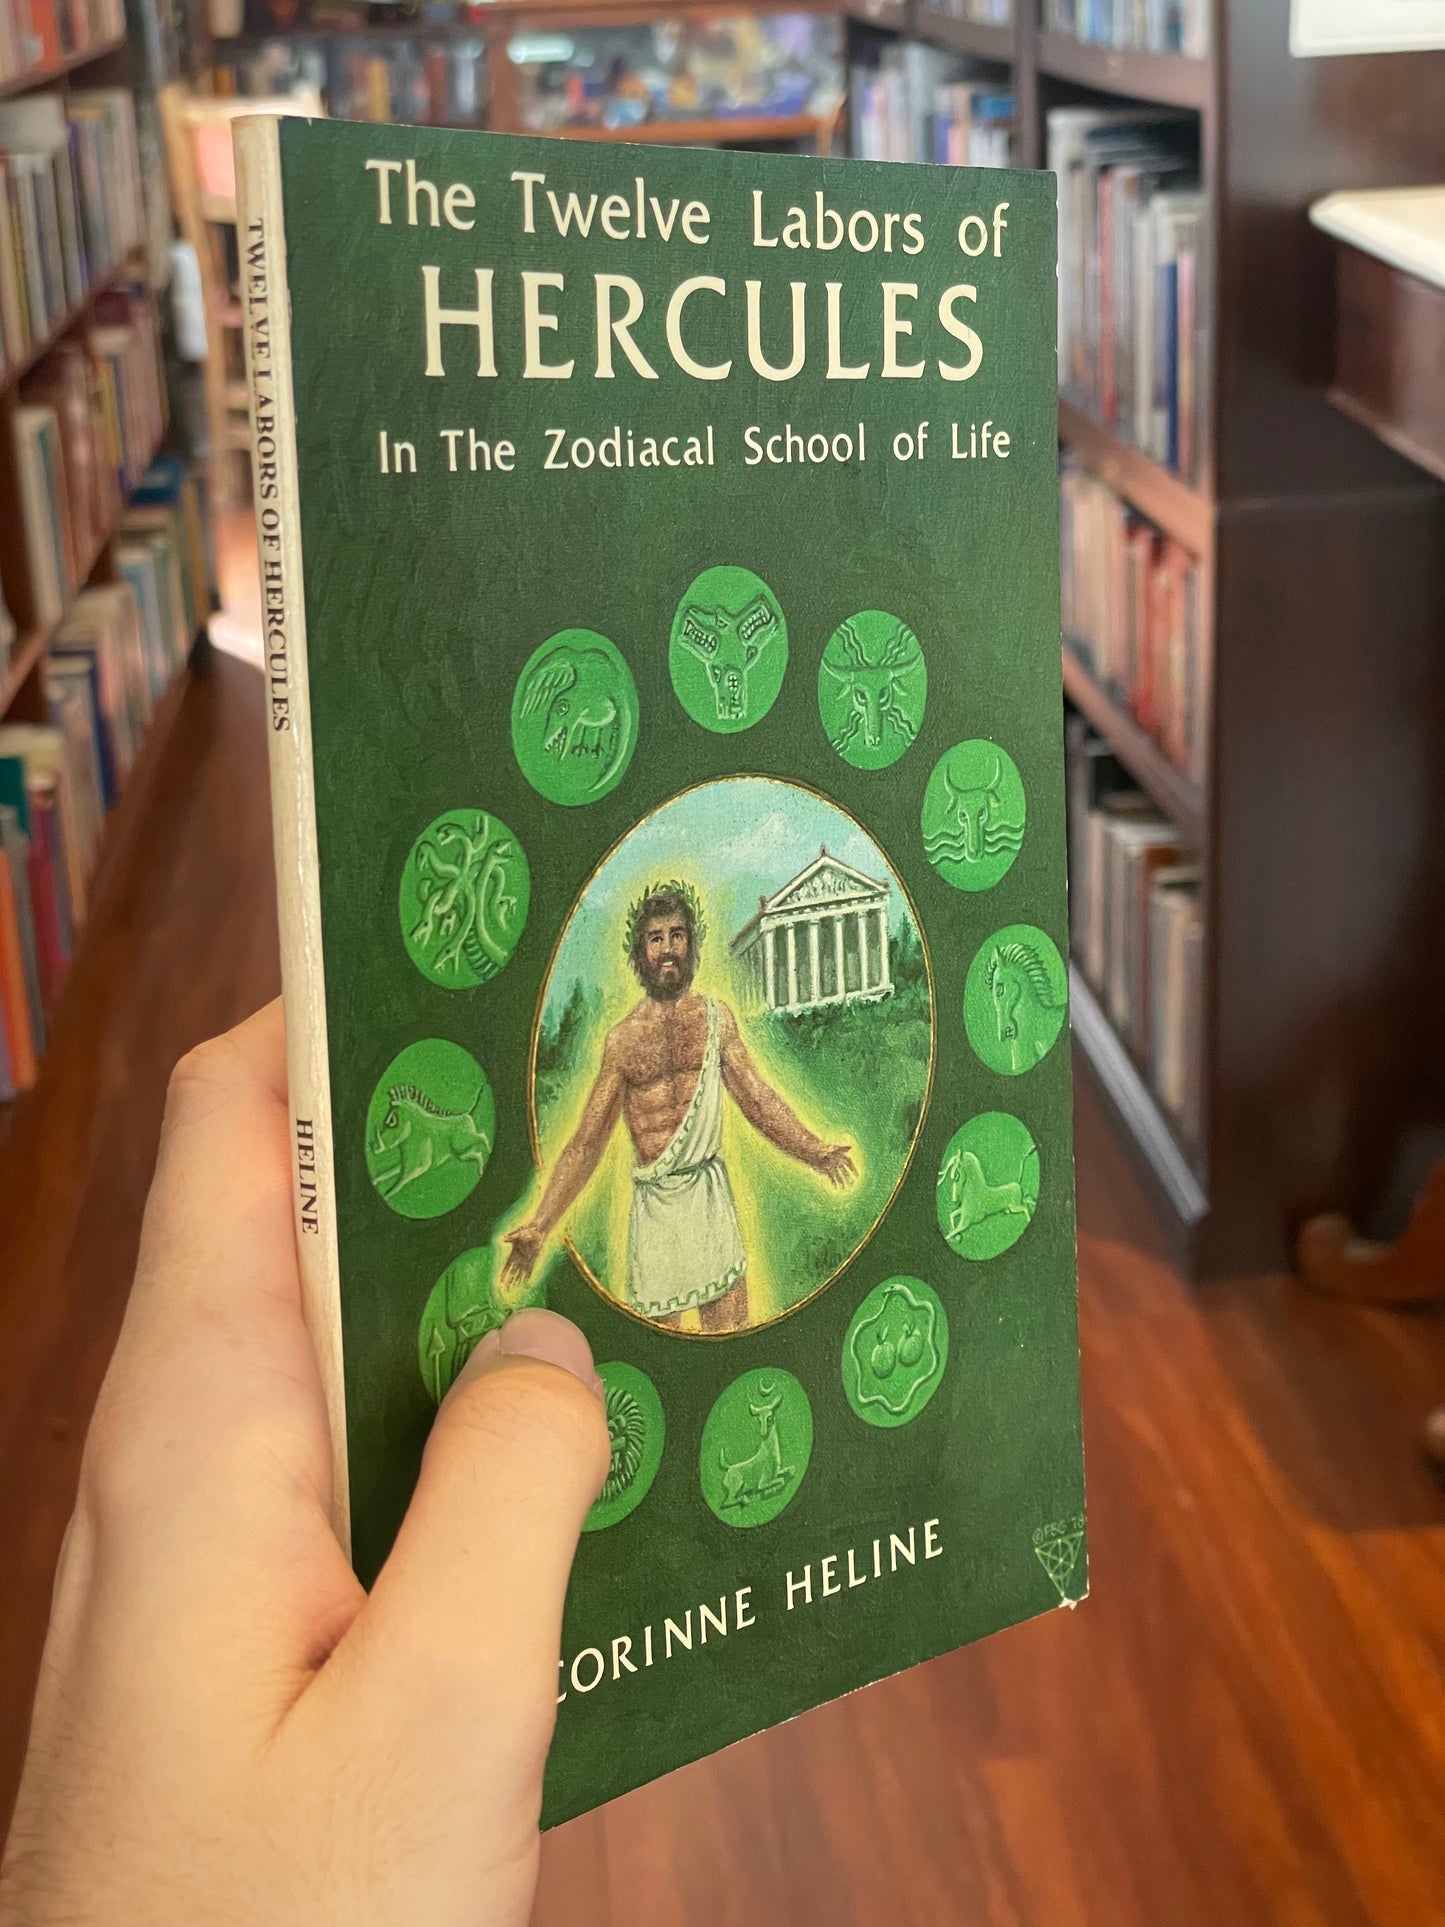 The Twelve Labors of Hercules by Corinne Heline